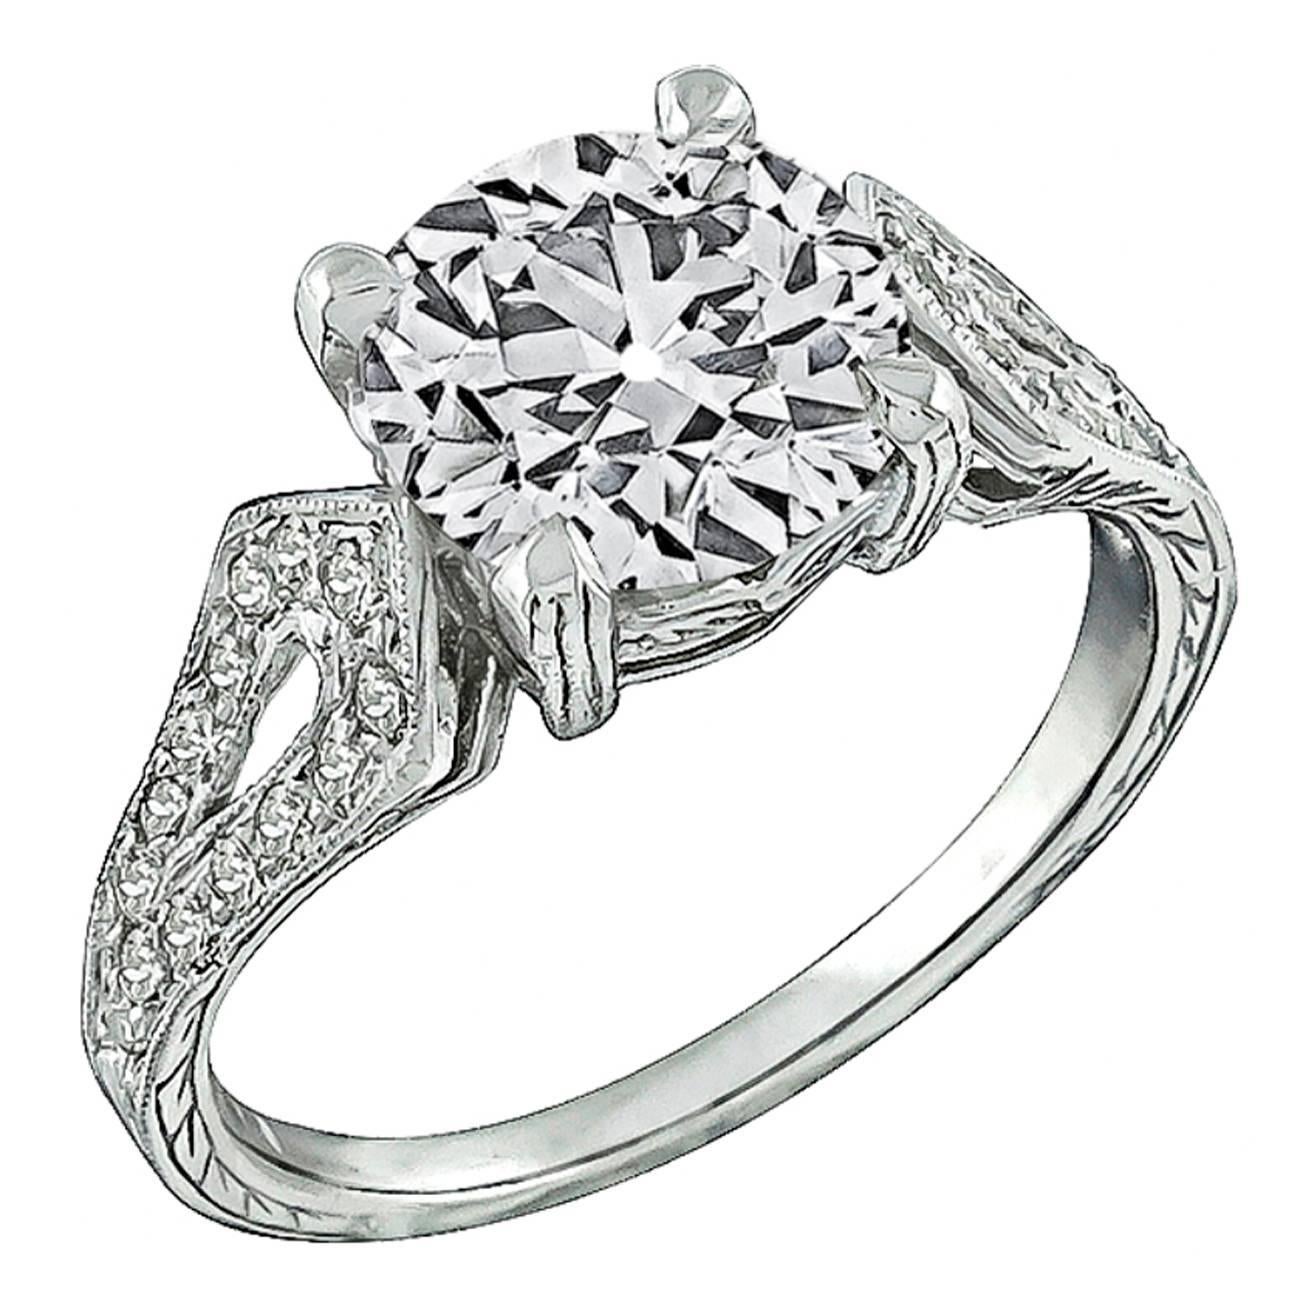 2.40 Carat Old European Cut Diamond Platinum Engagement Ring